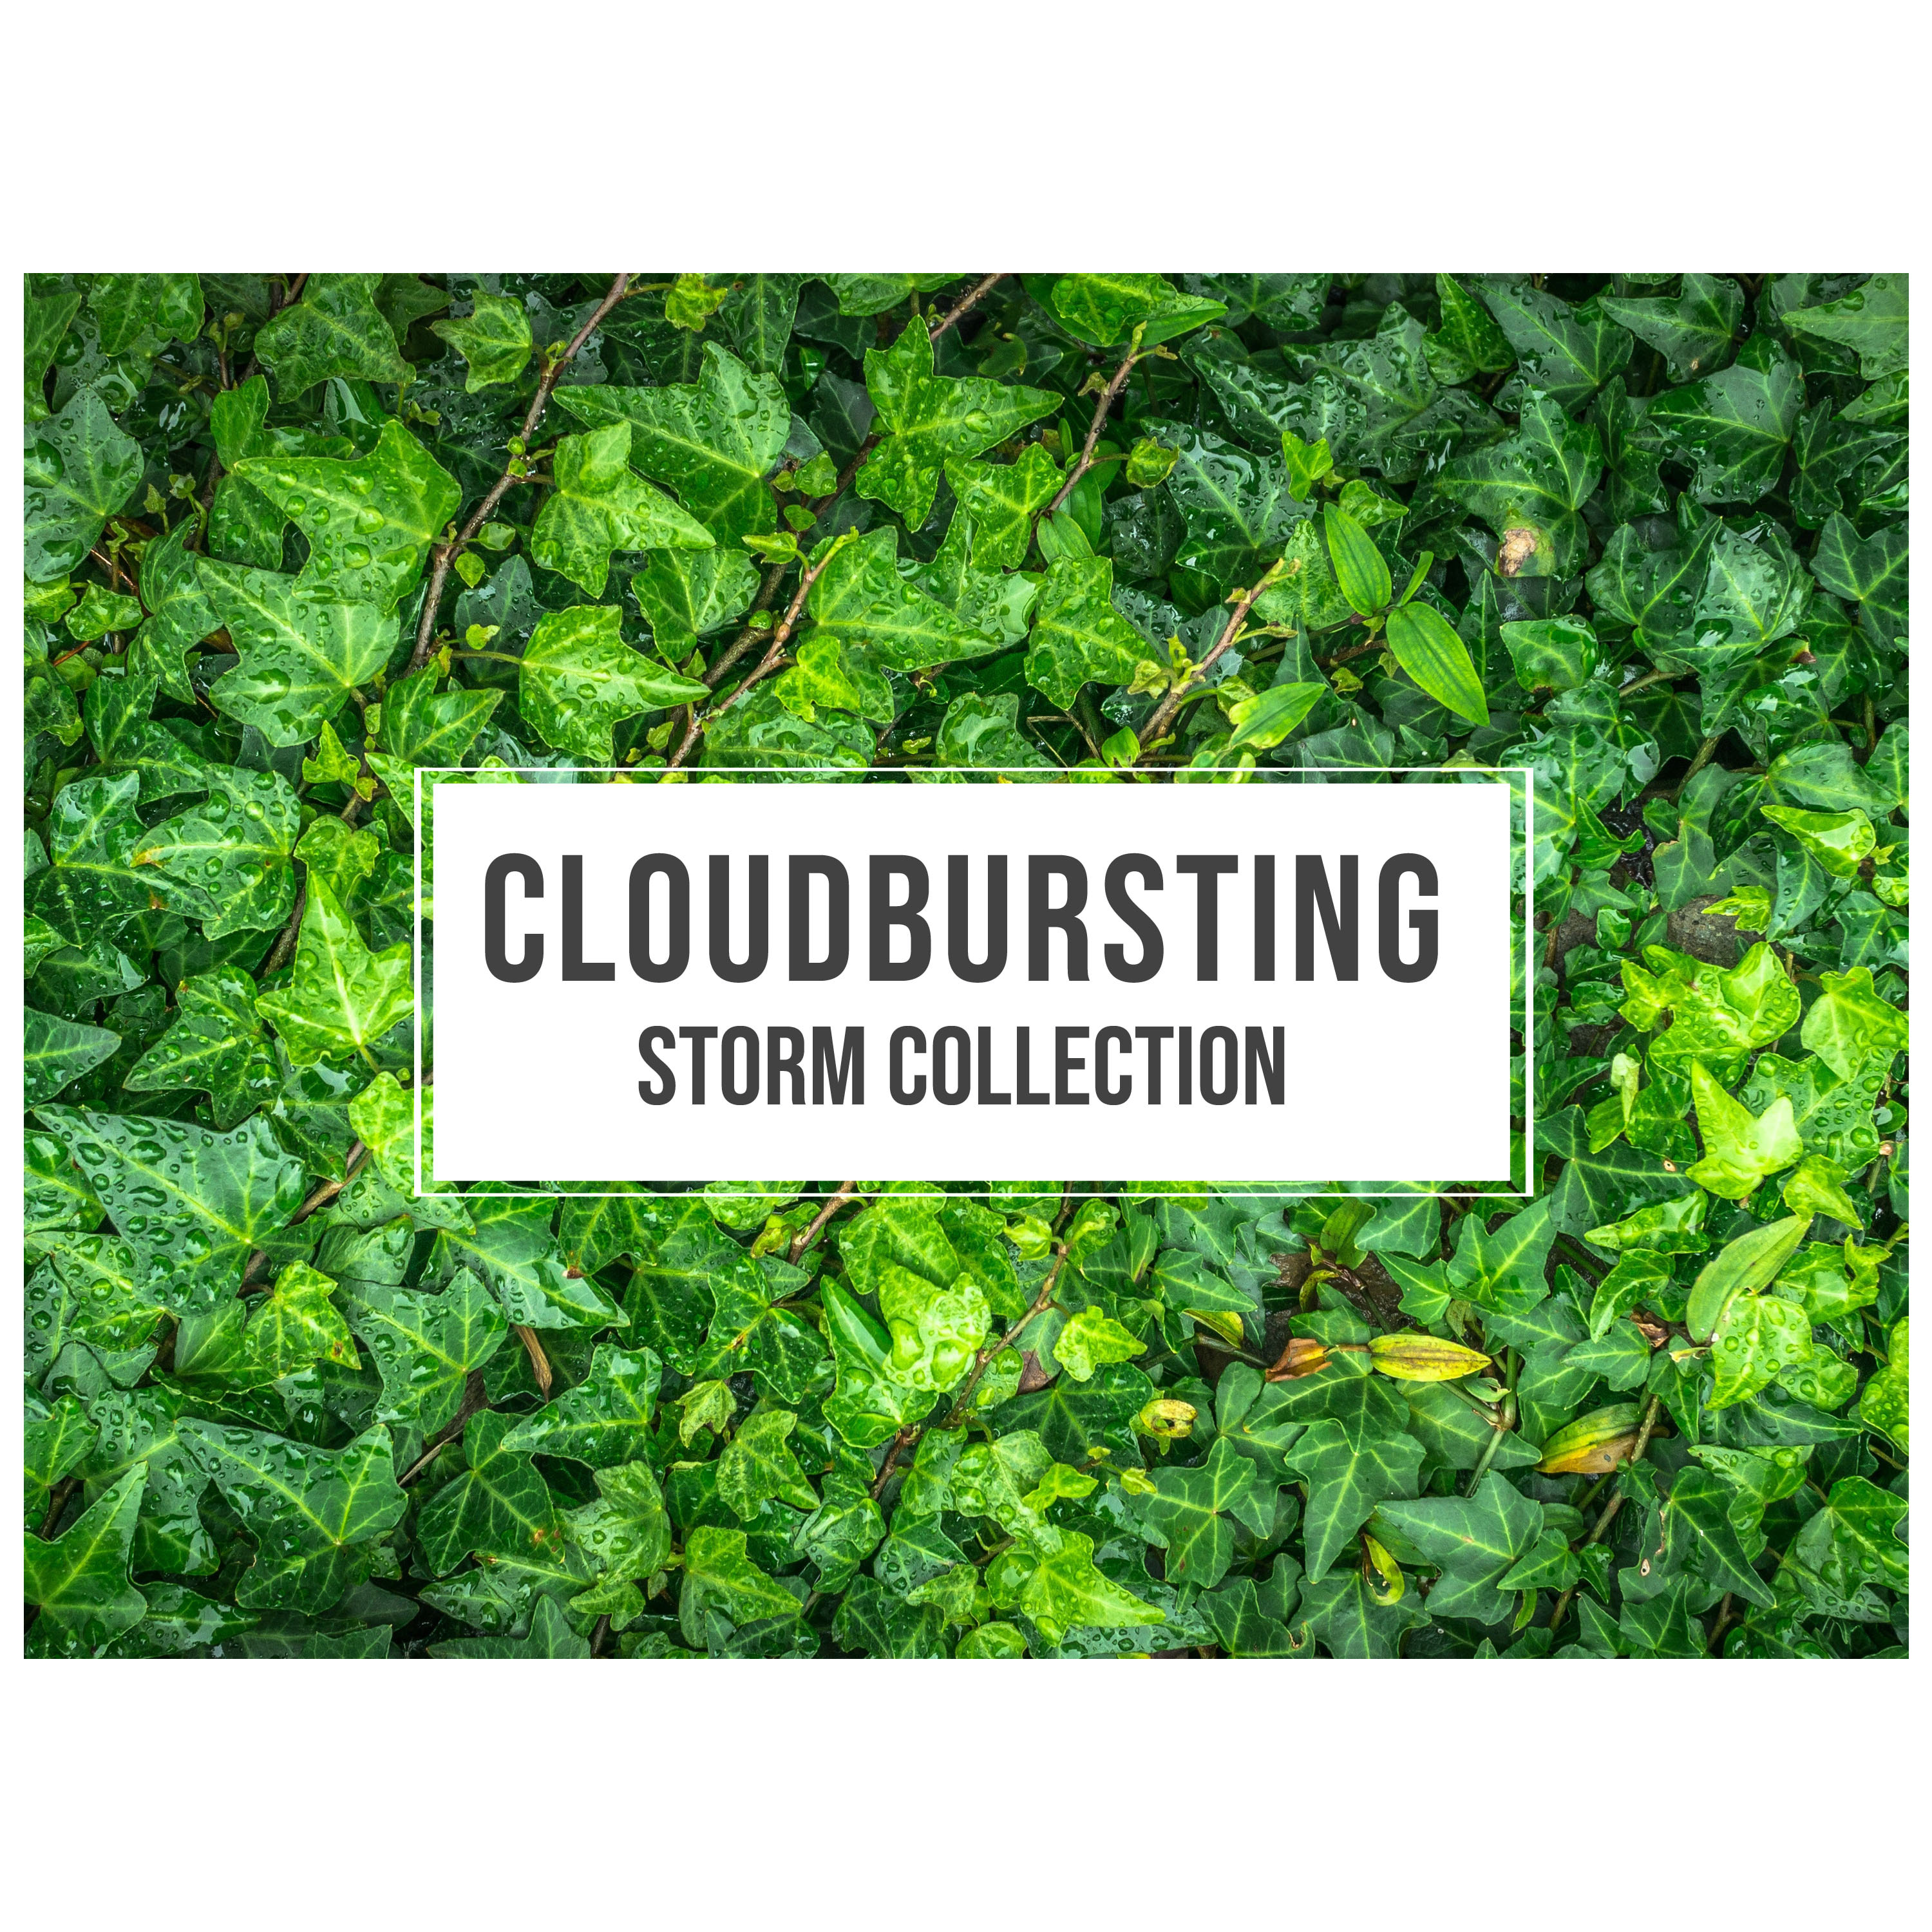 #17 Cloudbursting Storm Collection